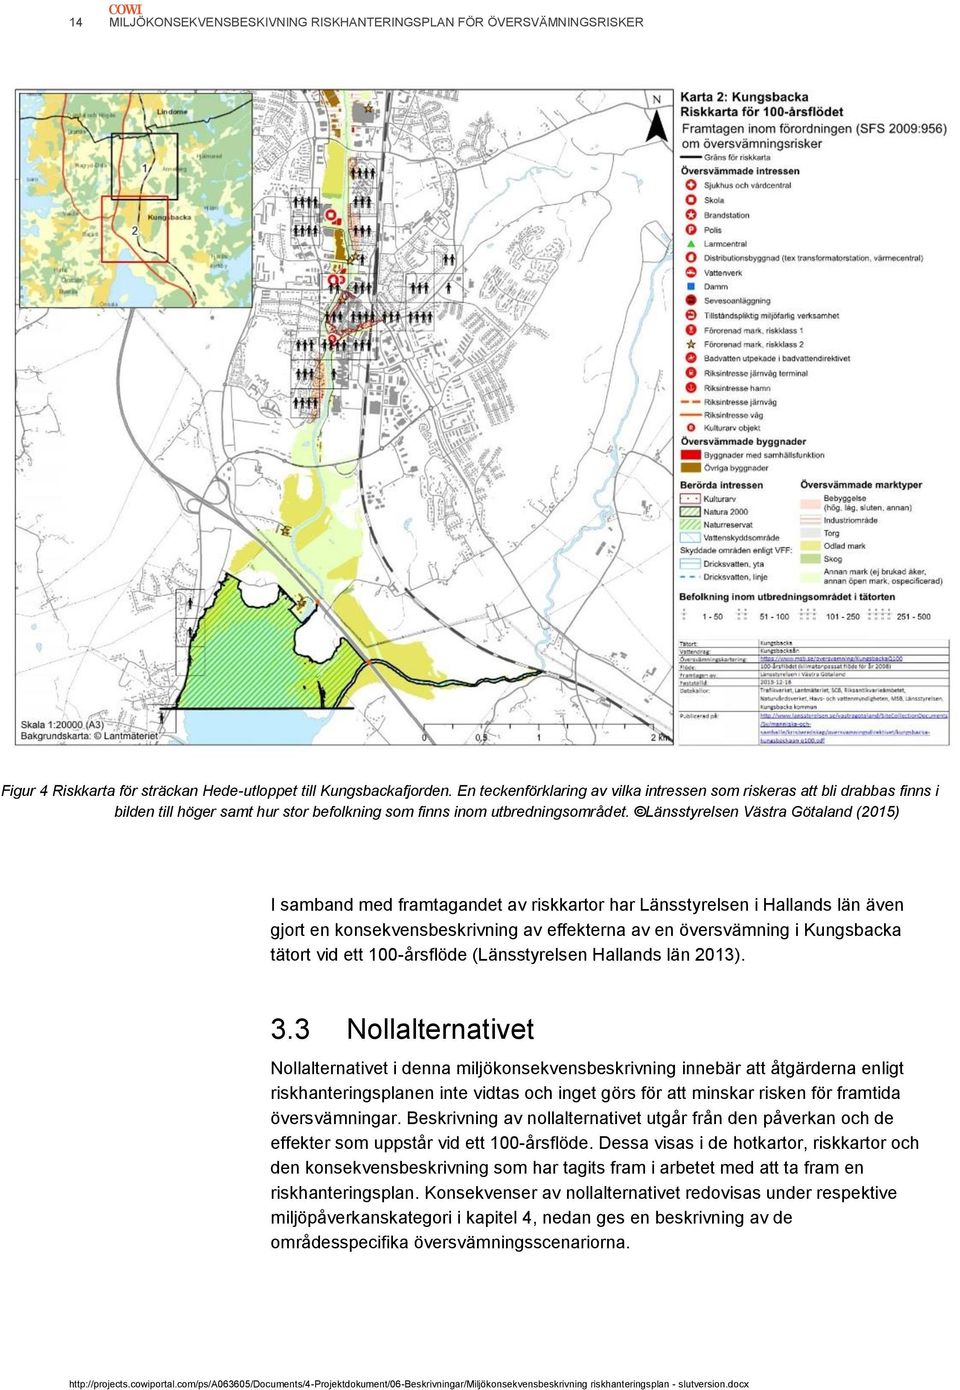 Länsstyrelsen Västra Götaland (2015) I samband med framtagandet av riskkartor har Länsstyrelsen i Hallands län även gjort en konsekvensbeskrivning av effekterna av en översvämning i Kungsbacka tätort